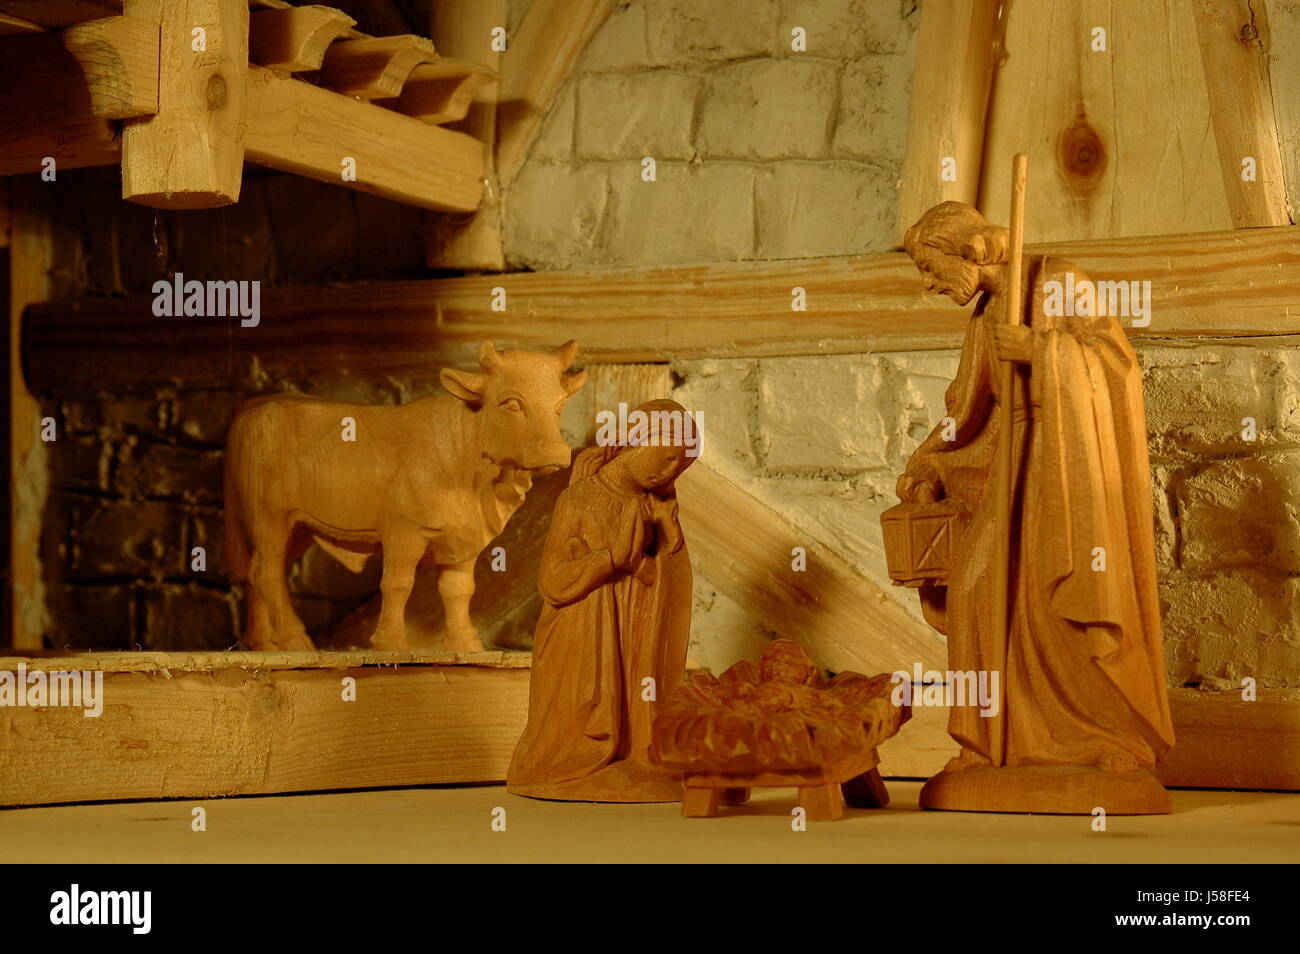 Establo de vacas hacer artesanía tradiciones pesebre al niño Jesús Joseph wood Foto de stock